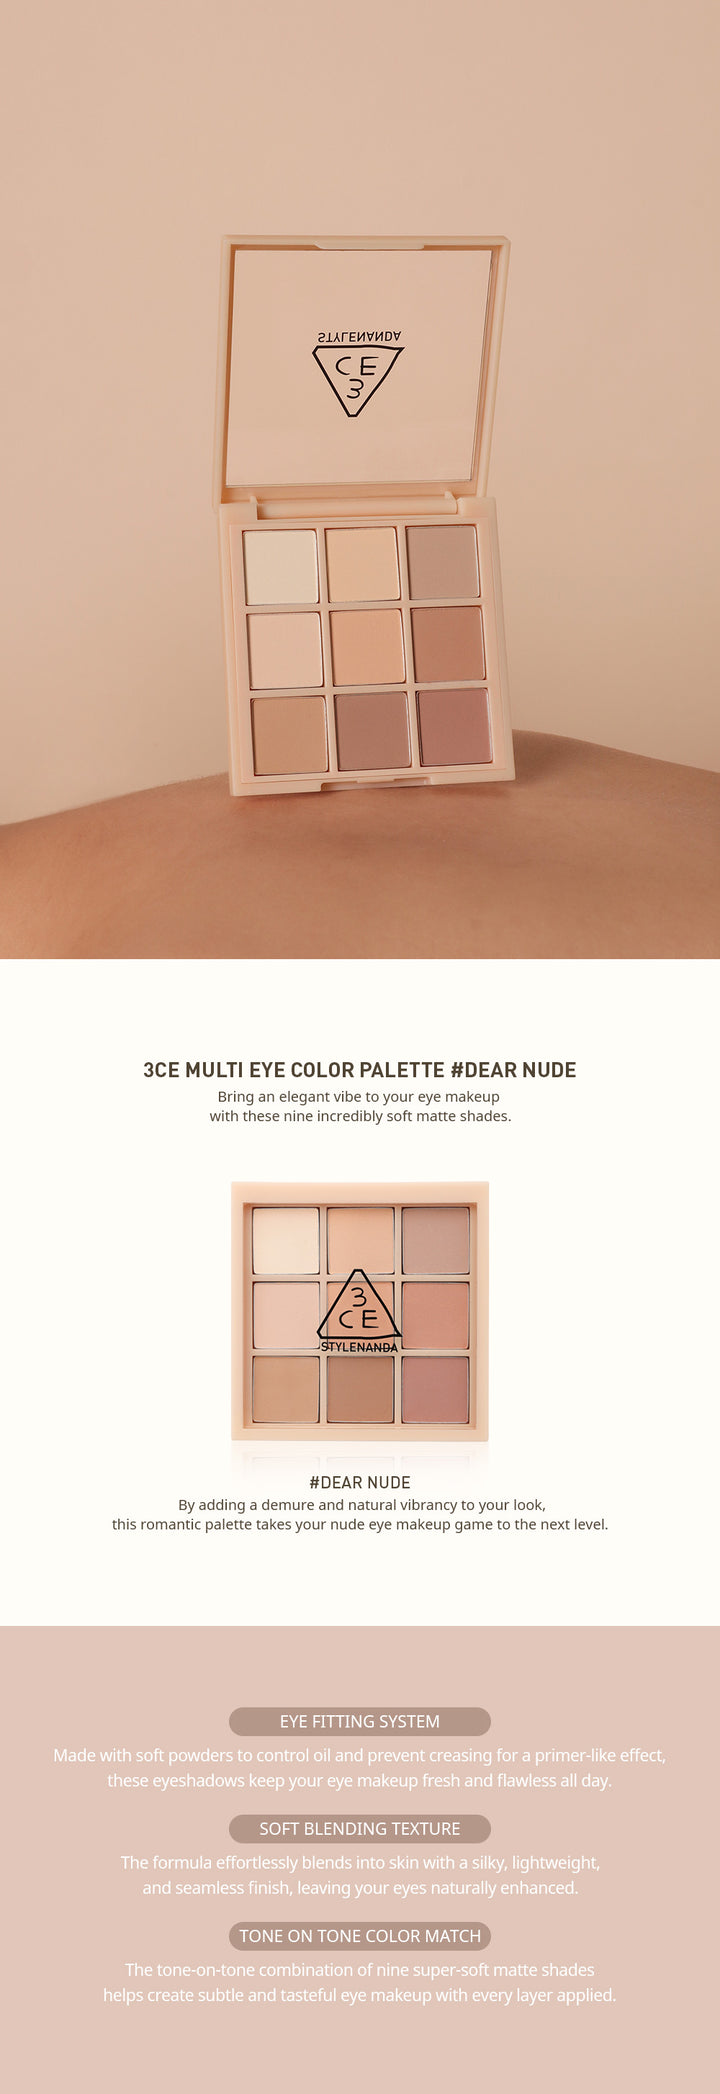 3CE Multi Eye Color Palette #Dear Nude